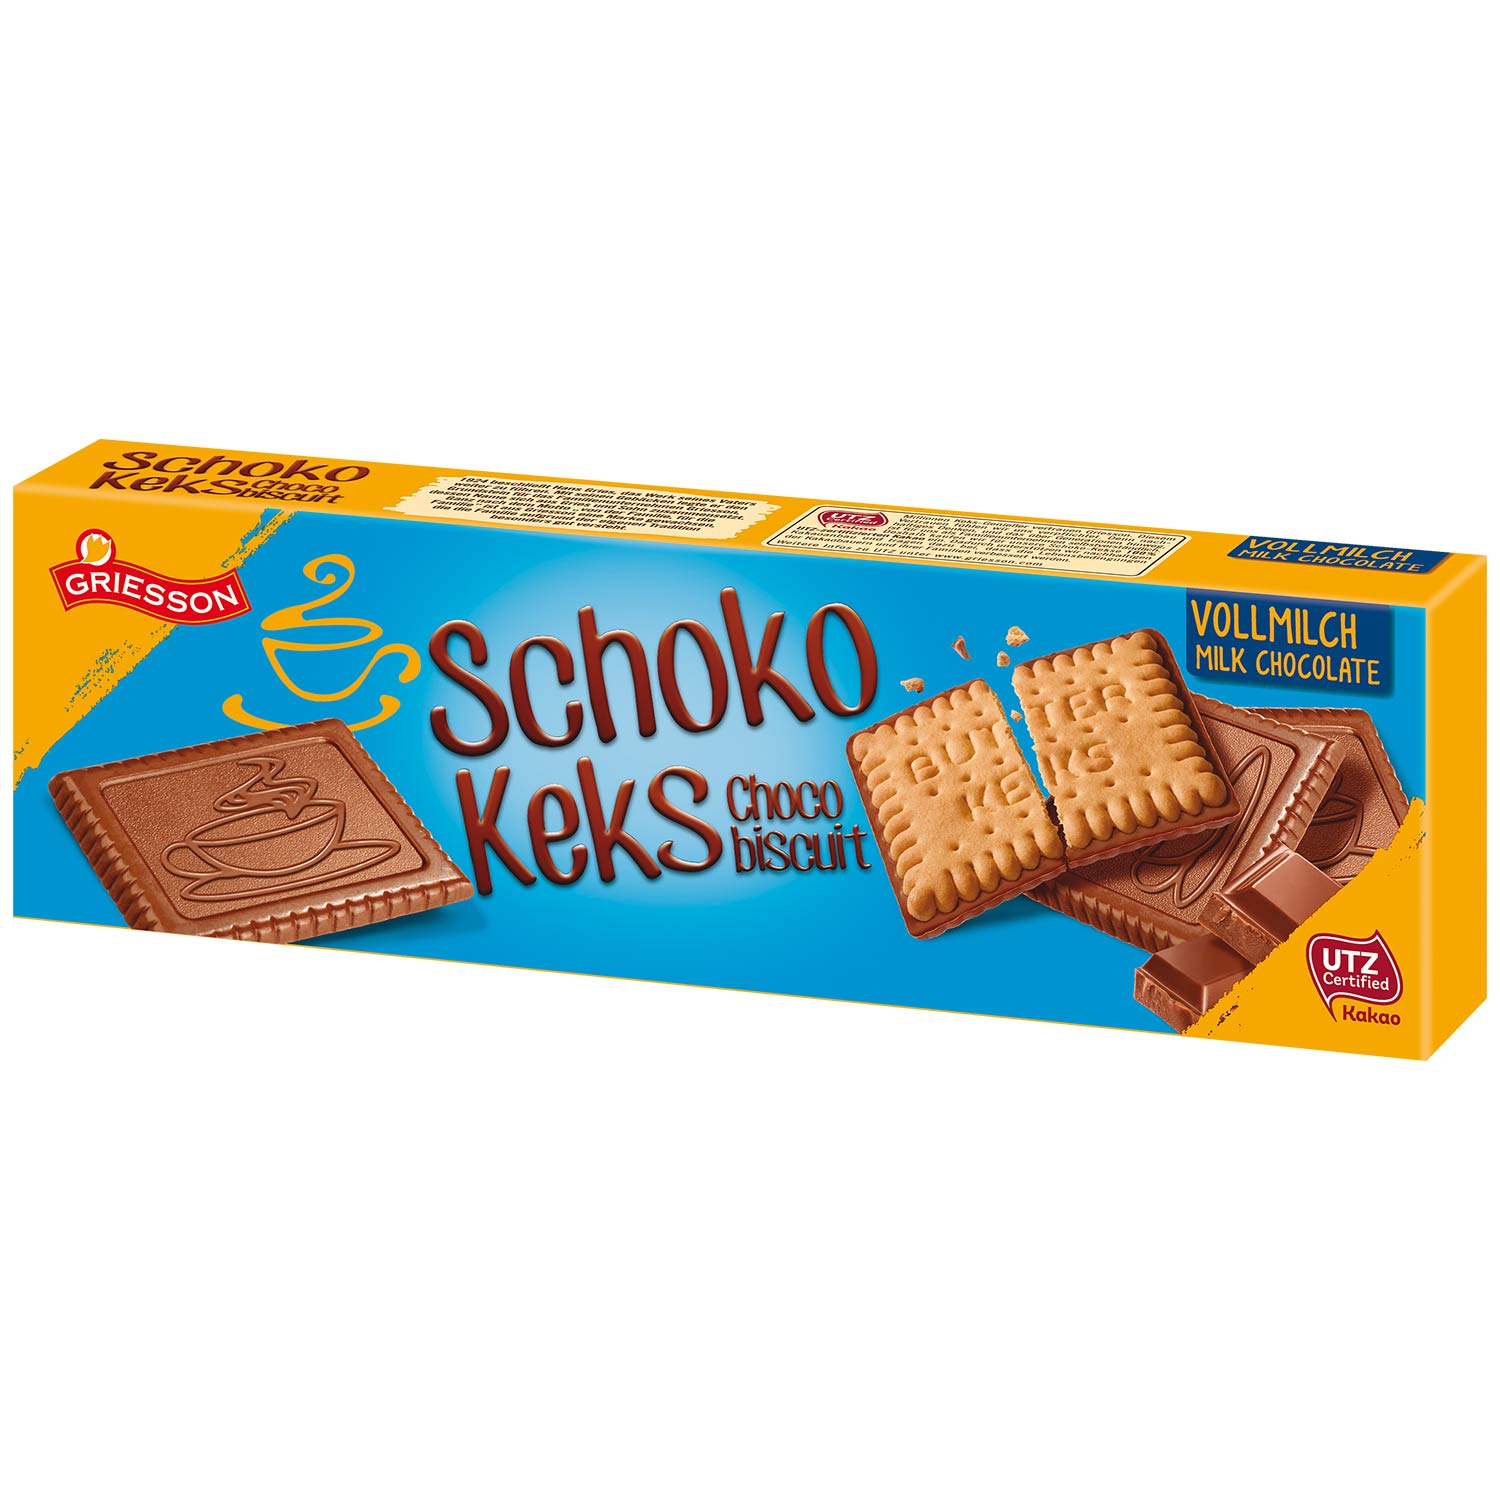 Griesson Schoko Keks Vollmilch 125g | Online kaufen im World of Sweets Shop